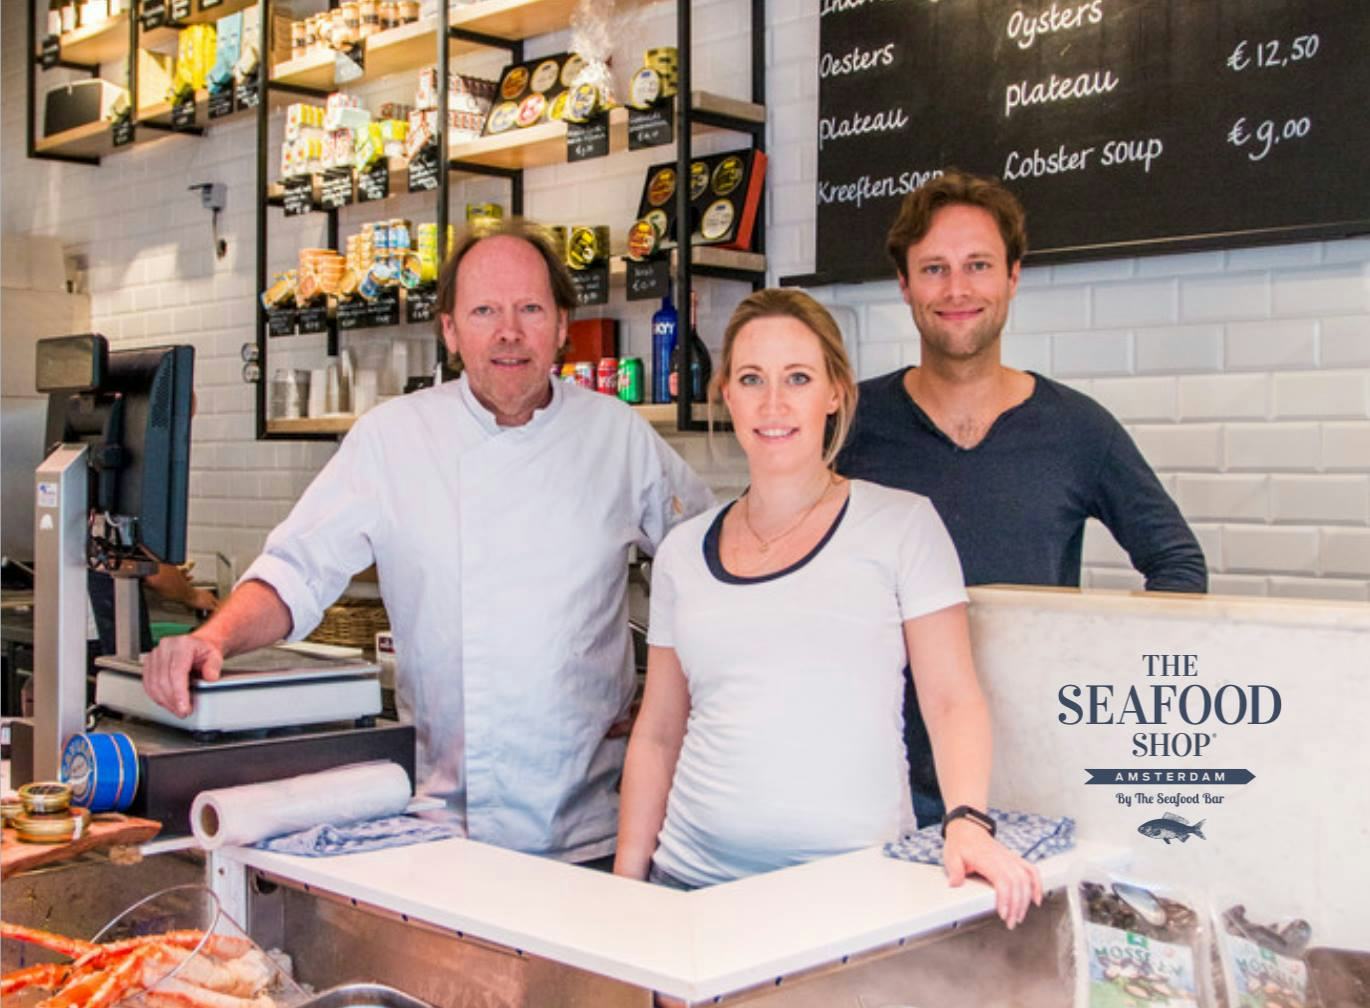 Start crowdfundingsactie voor The Seafood Shop dat moet sluiten